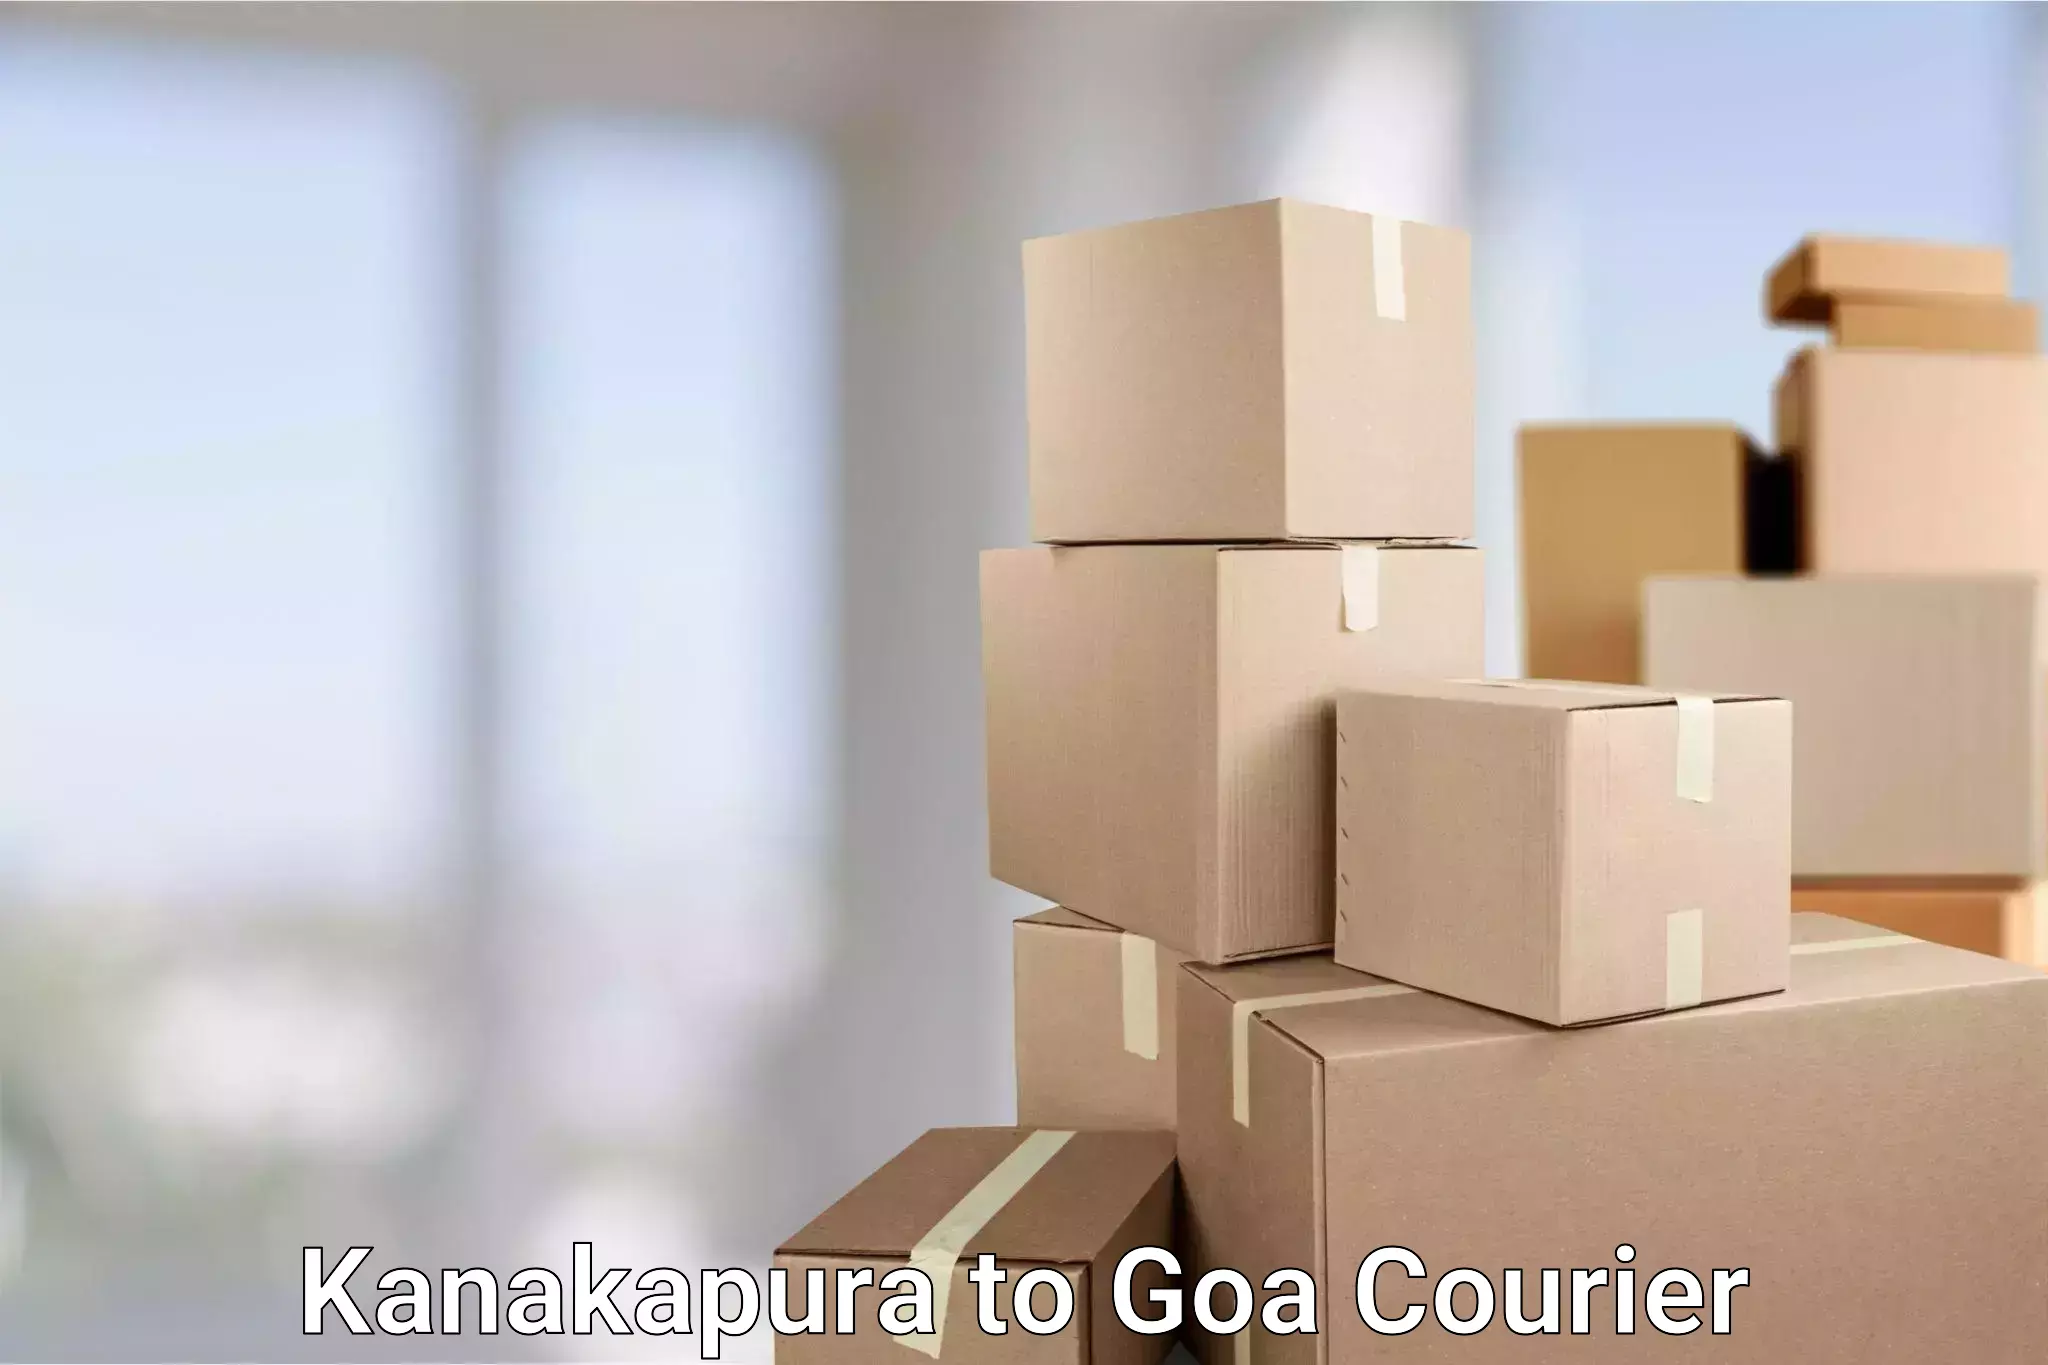 Fast delivery service Kanakapura to Goa